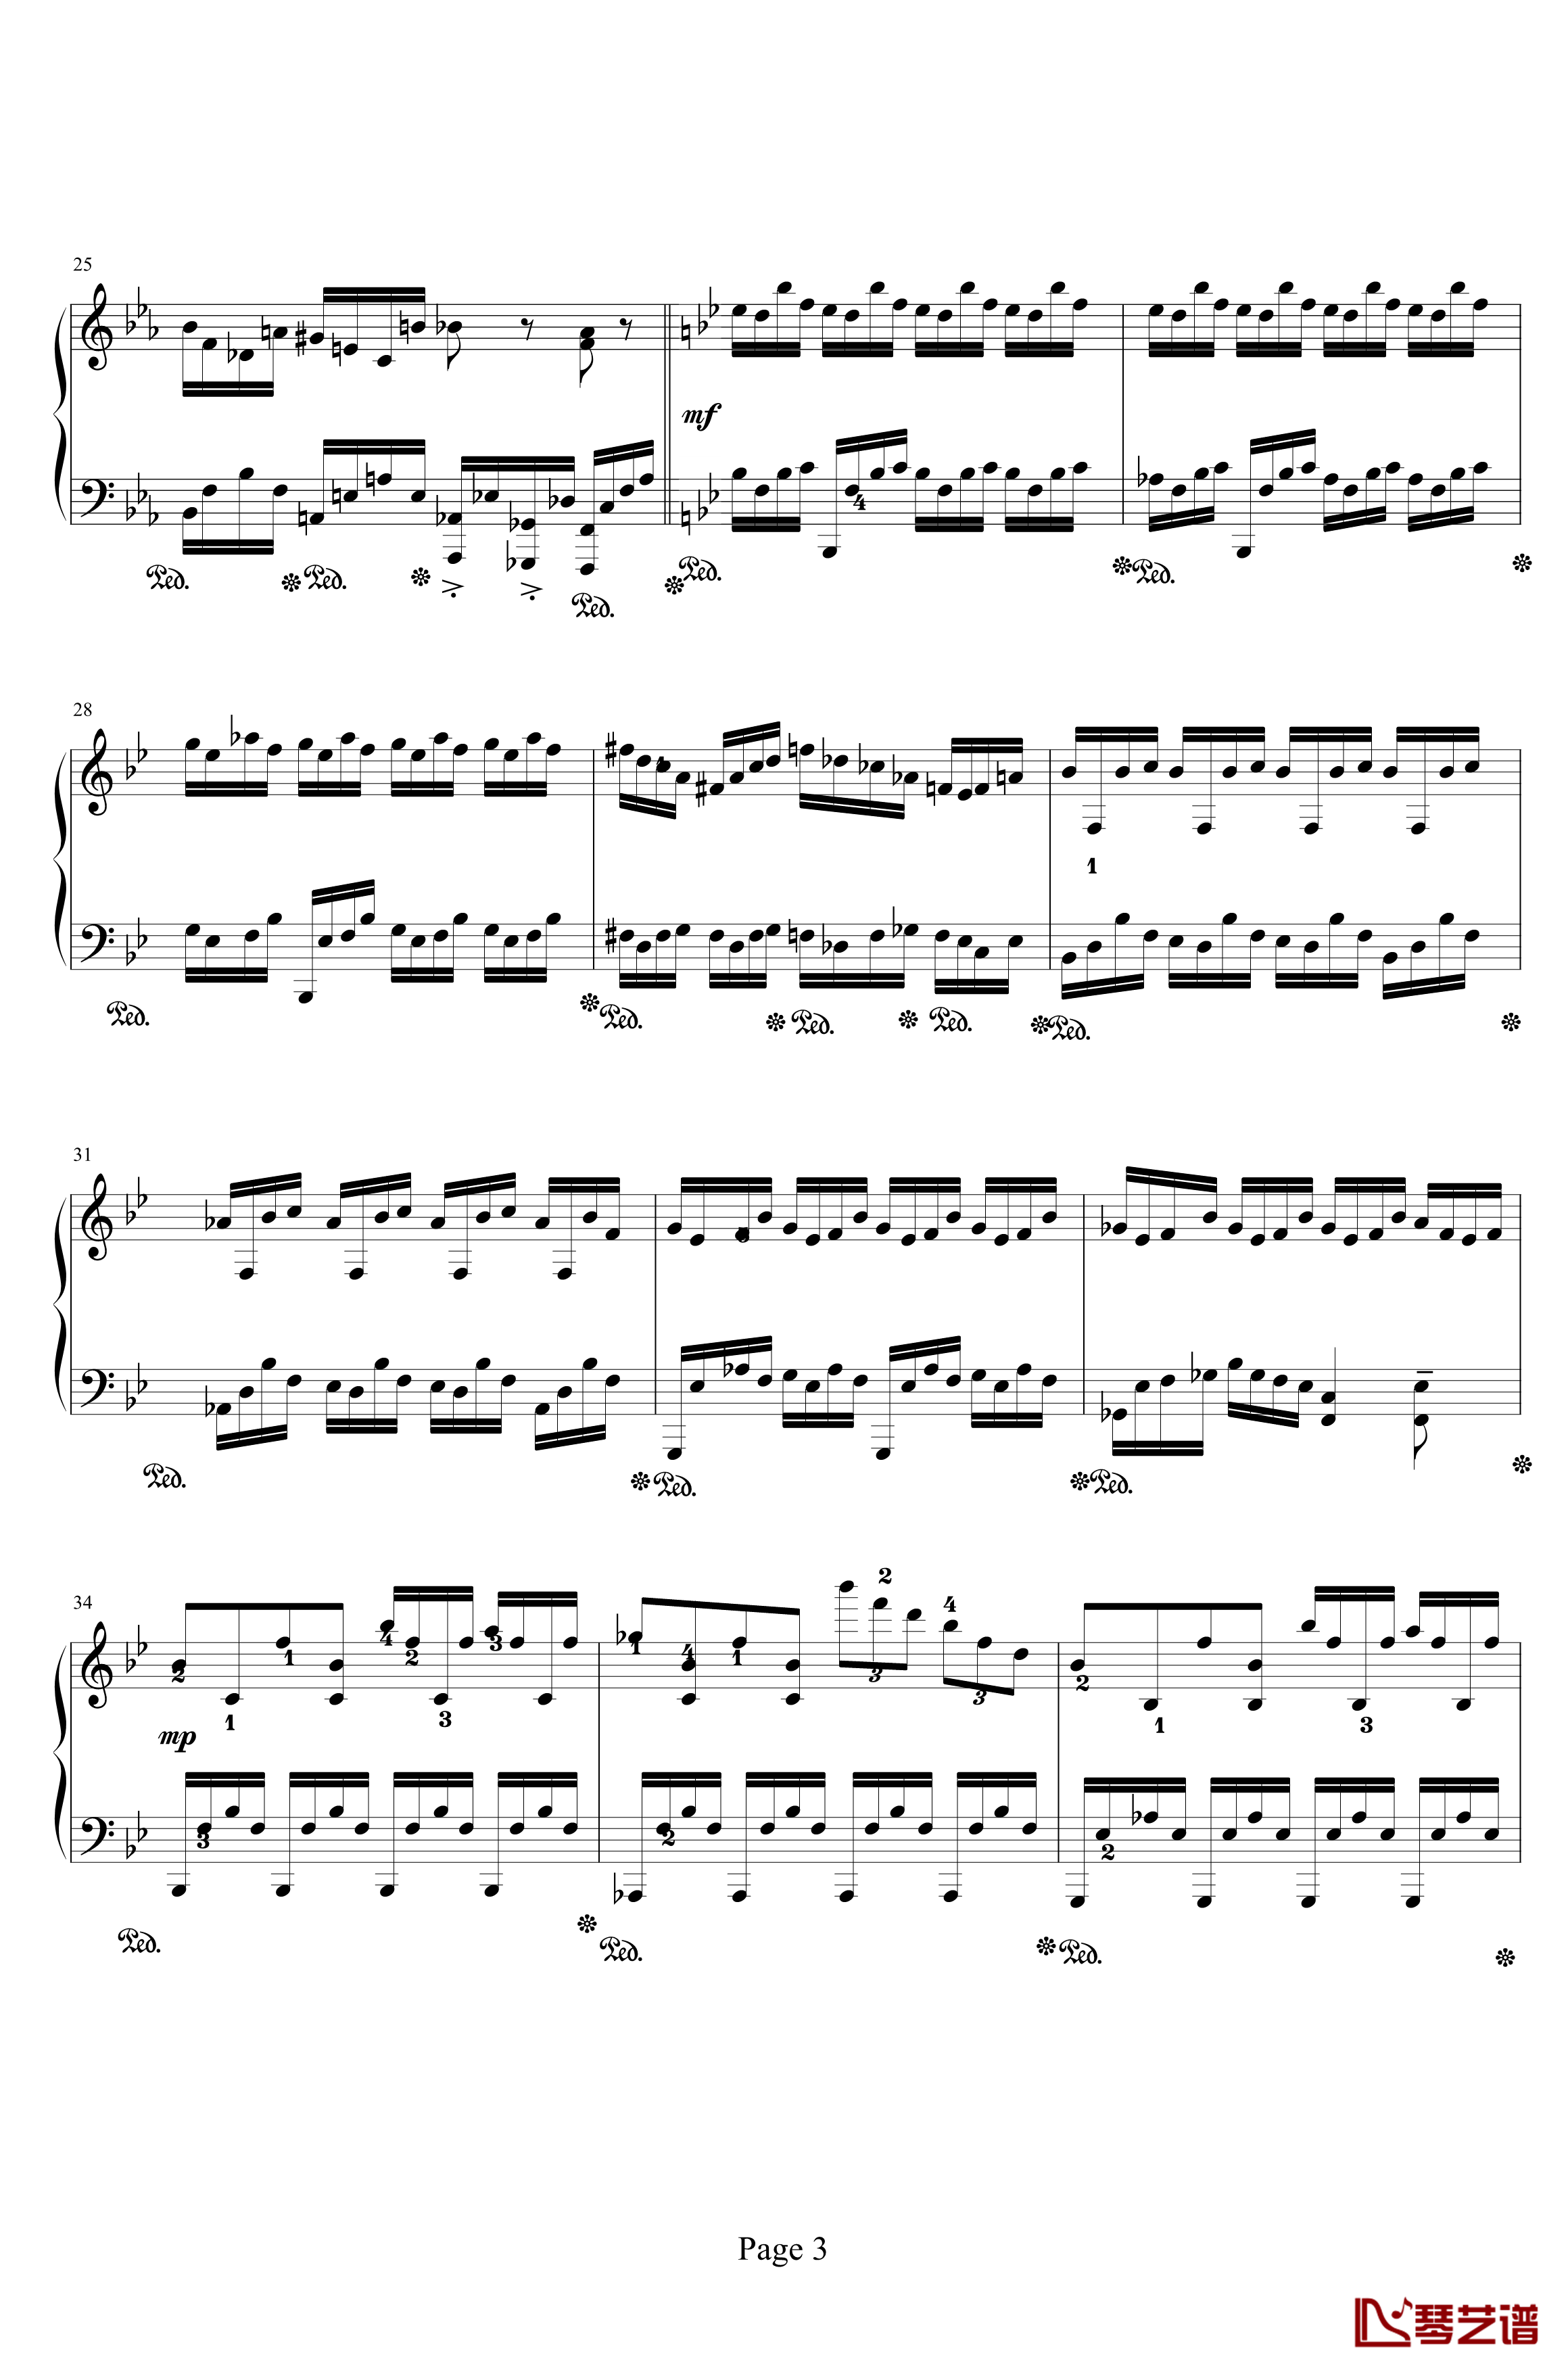 时空幻想练习曲钢琴谱-Ⅰ-晨曦阿西3